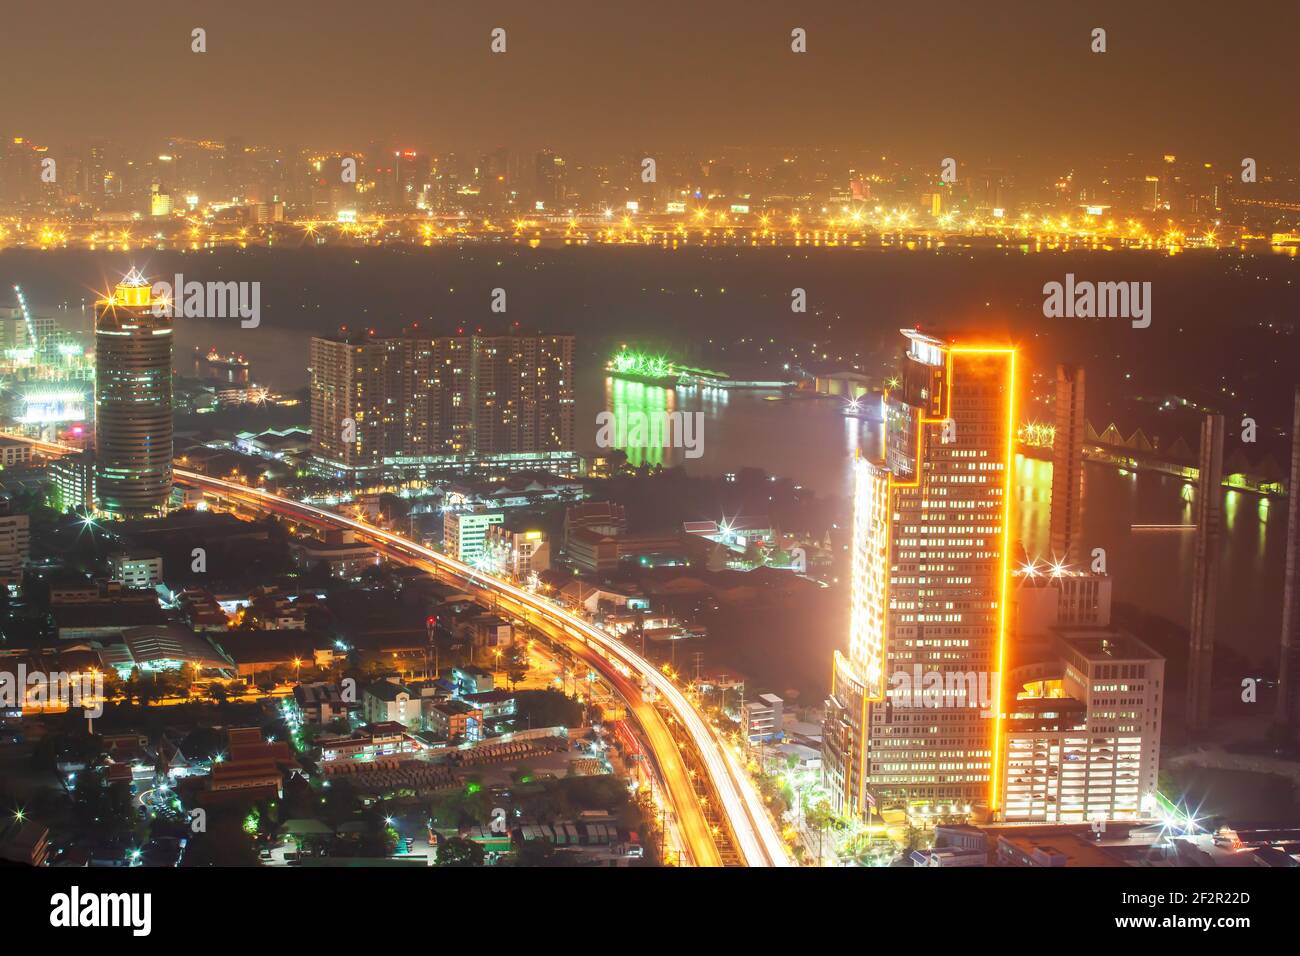 Stadtnacht am Flussufer. Luftaufnahme der Innenstadt von Bangkok Gebäude und Chao Phraya Fluss in der Nacht. Leuchtende Neonlichter und Lichter Wanderwege auf der Straße. Stockfoto